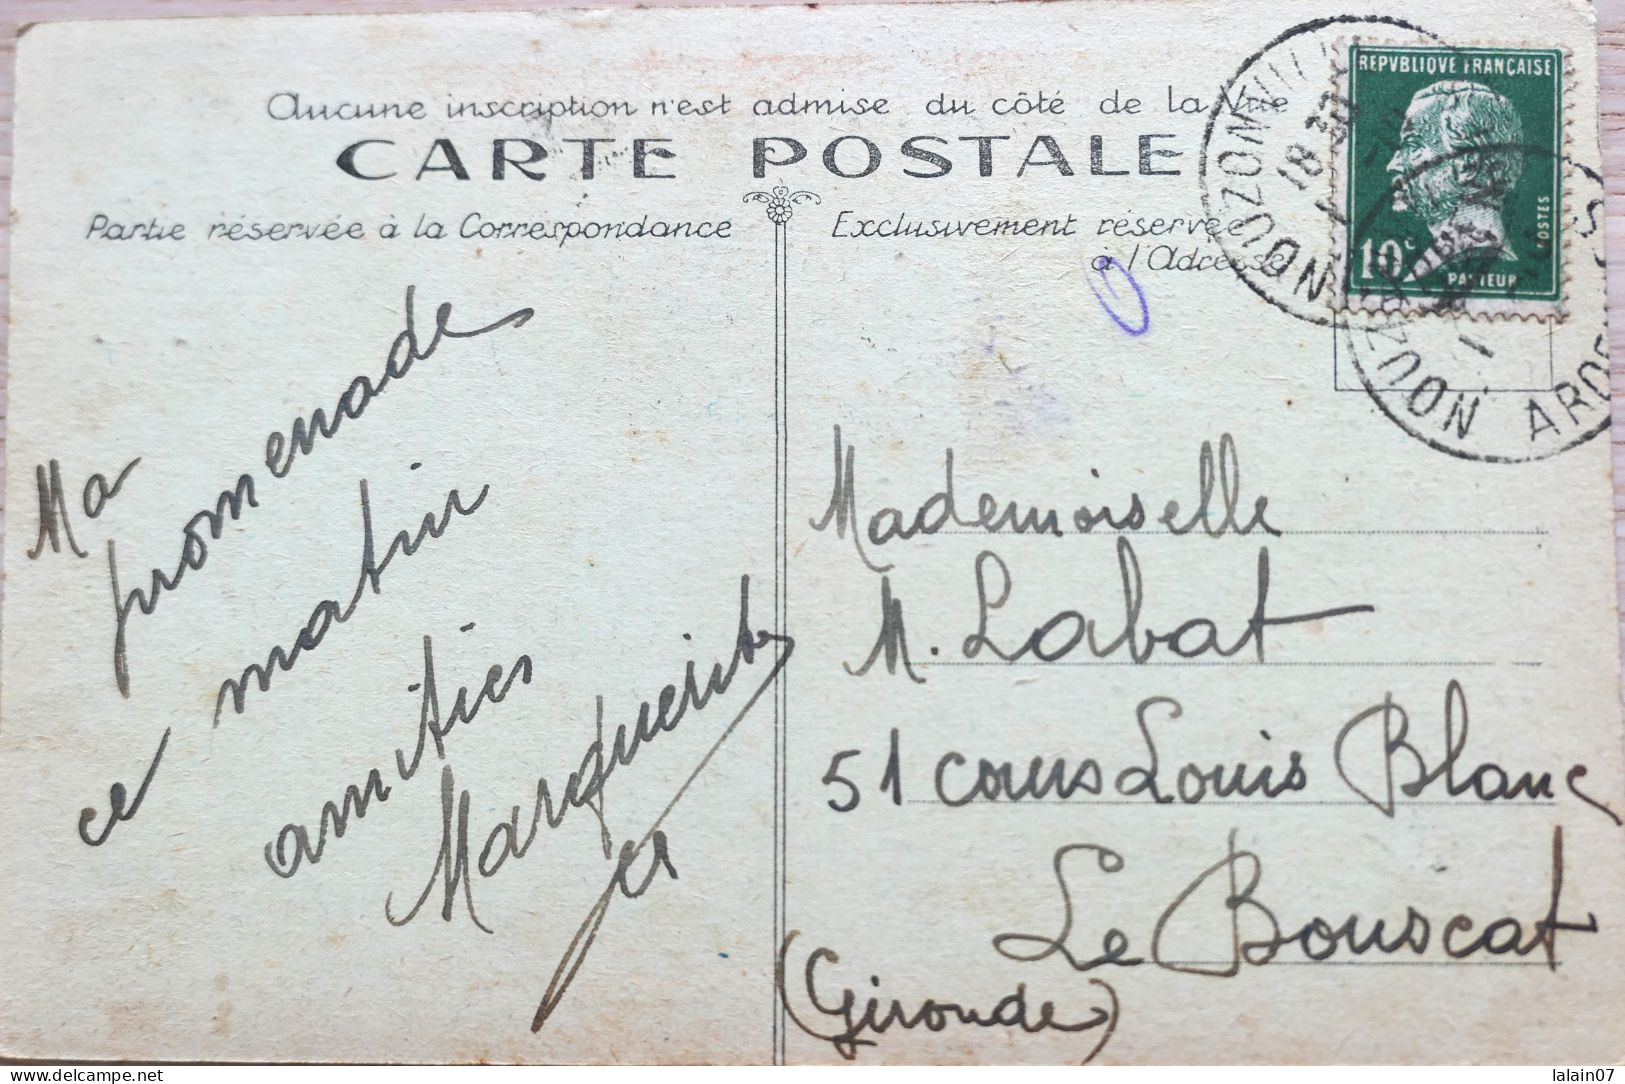 C. P. A. Couleur : 08 : NOUZONVILLE : La Meuse Vers Charleville, Timbre En 1924, édit : Papeterie Mlle Marie Hardy - Autres & Non Classés